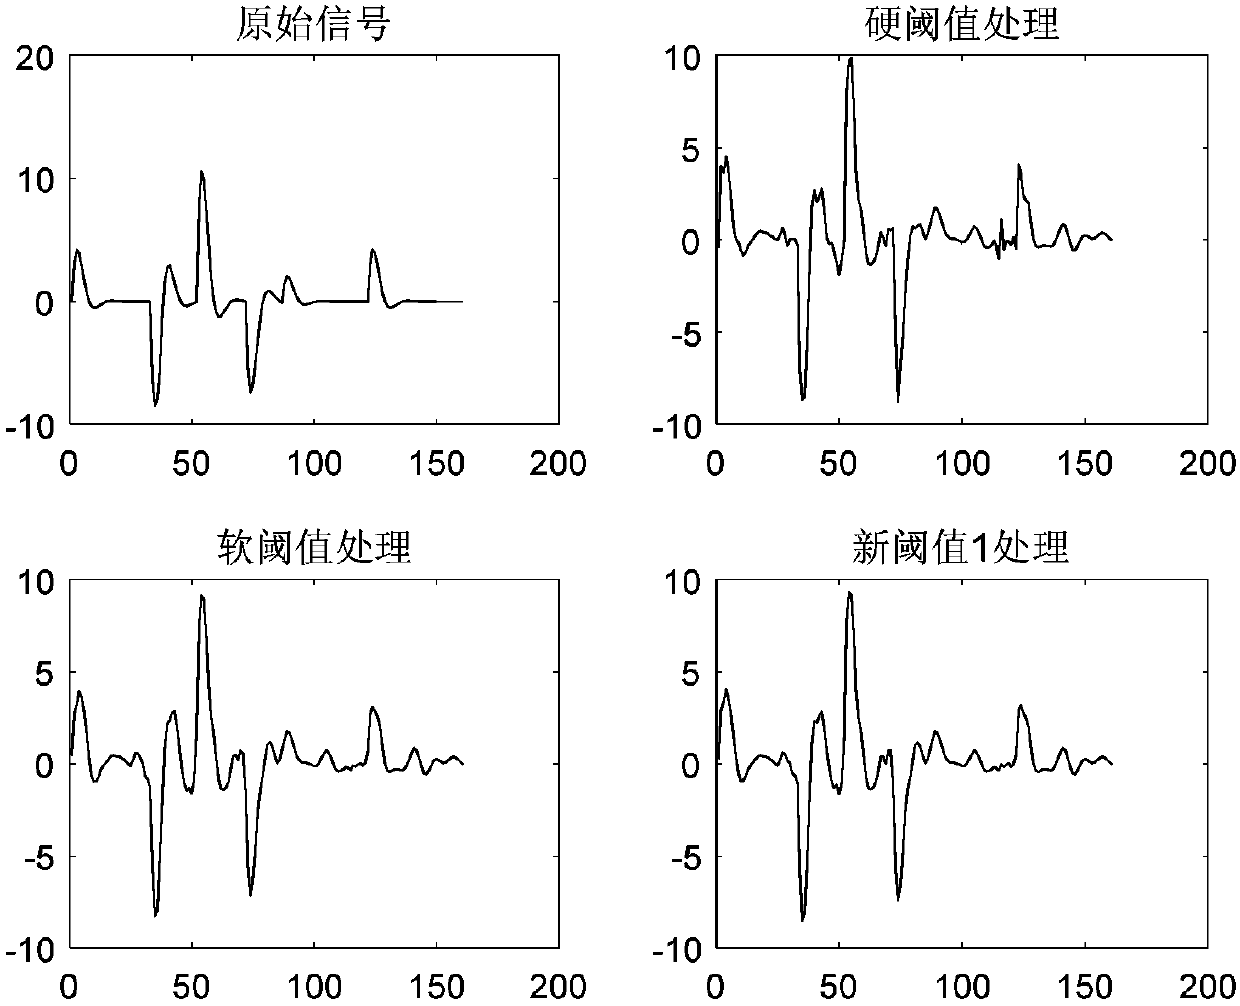 New threshold function seismic data de-noising method based on wavelet transform